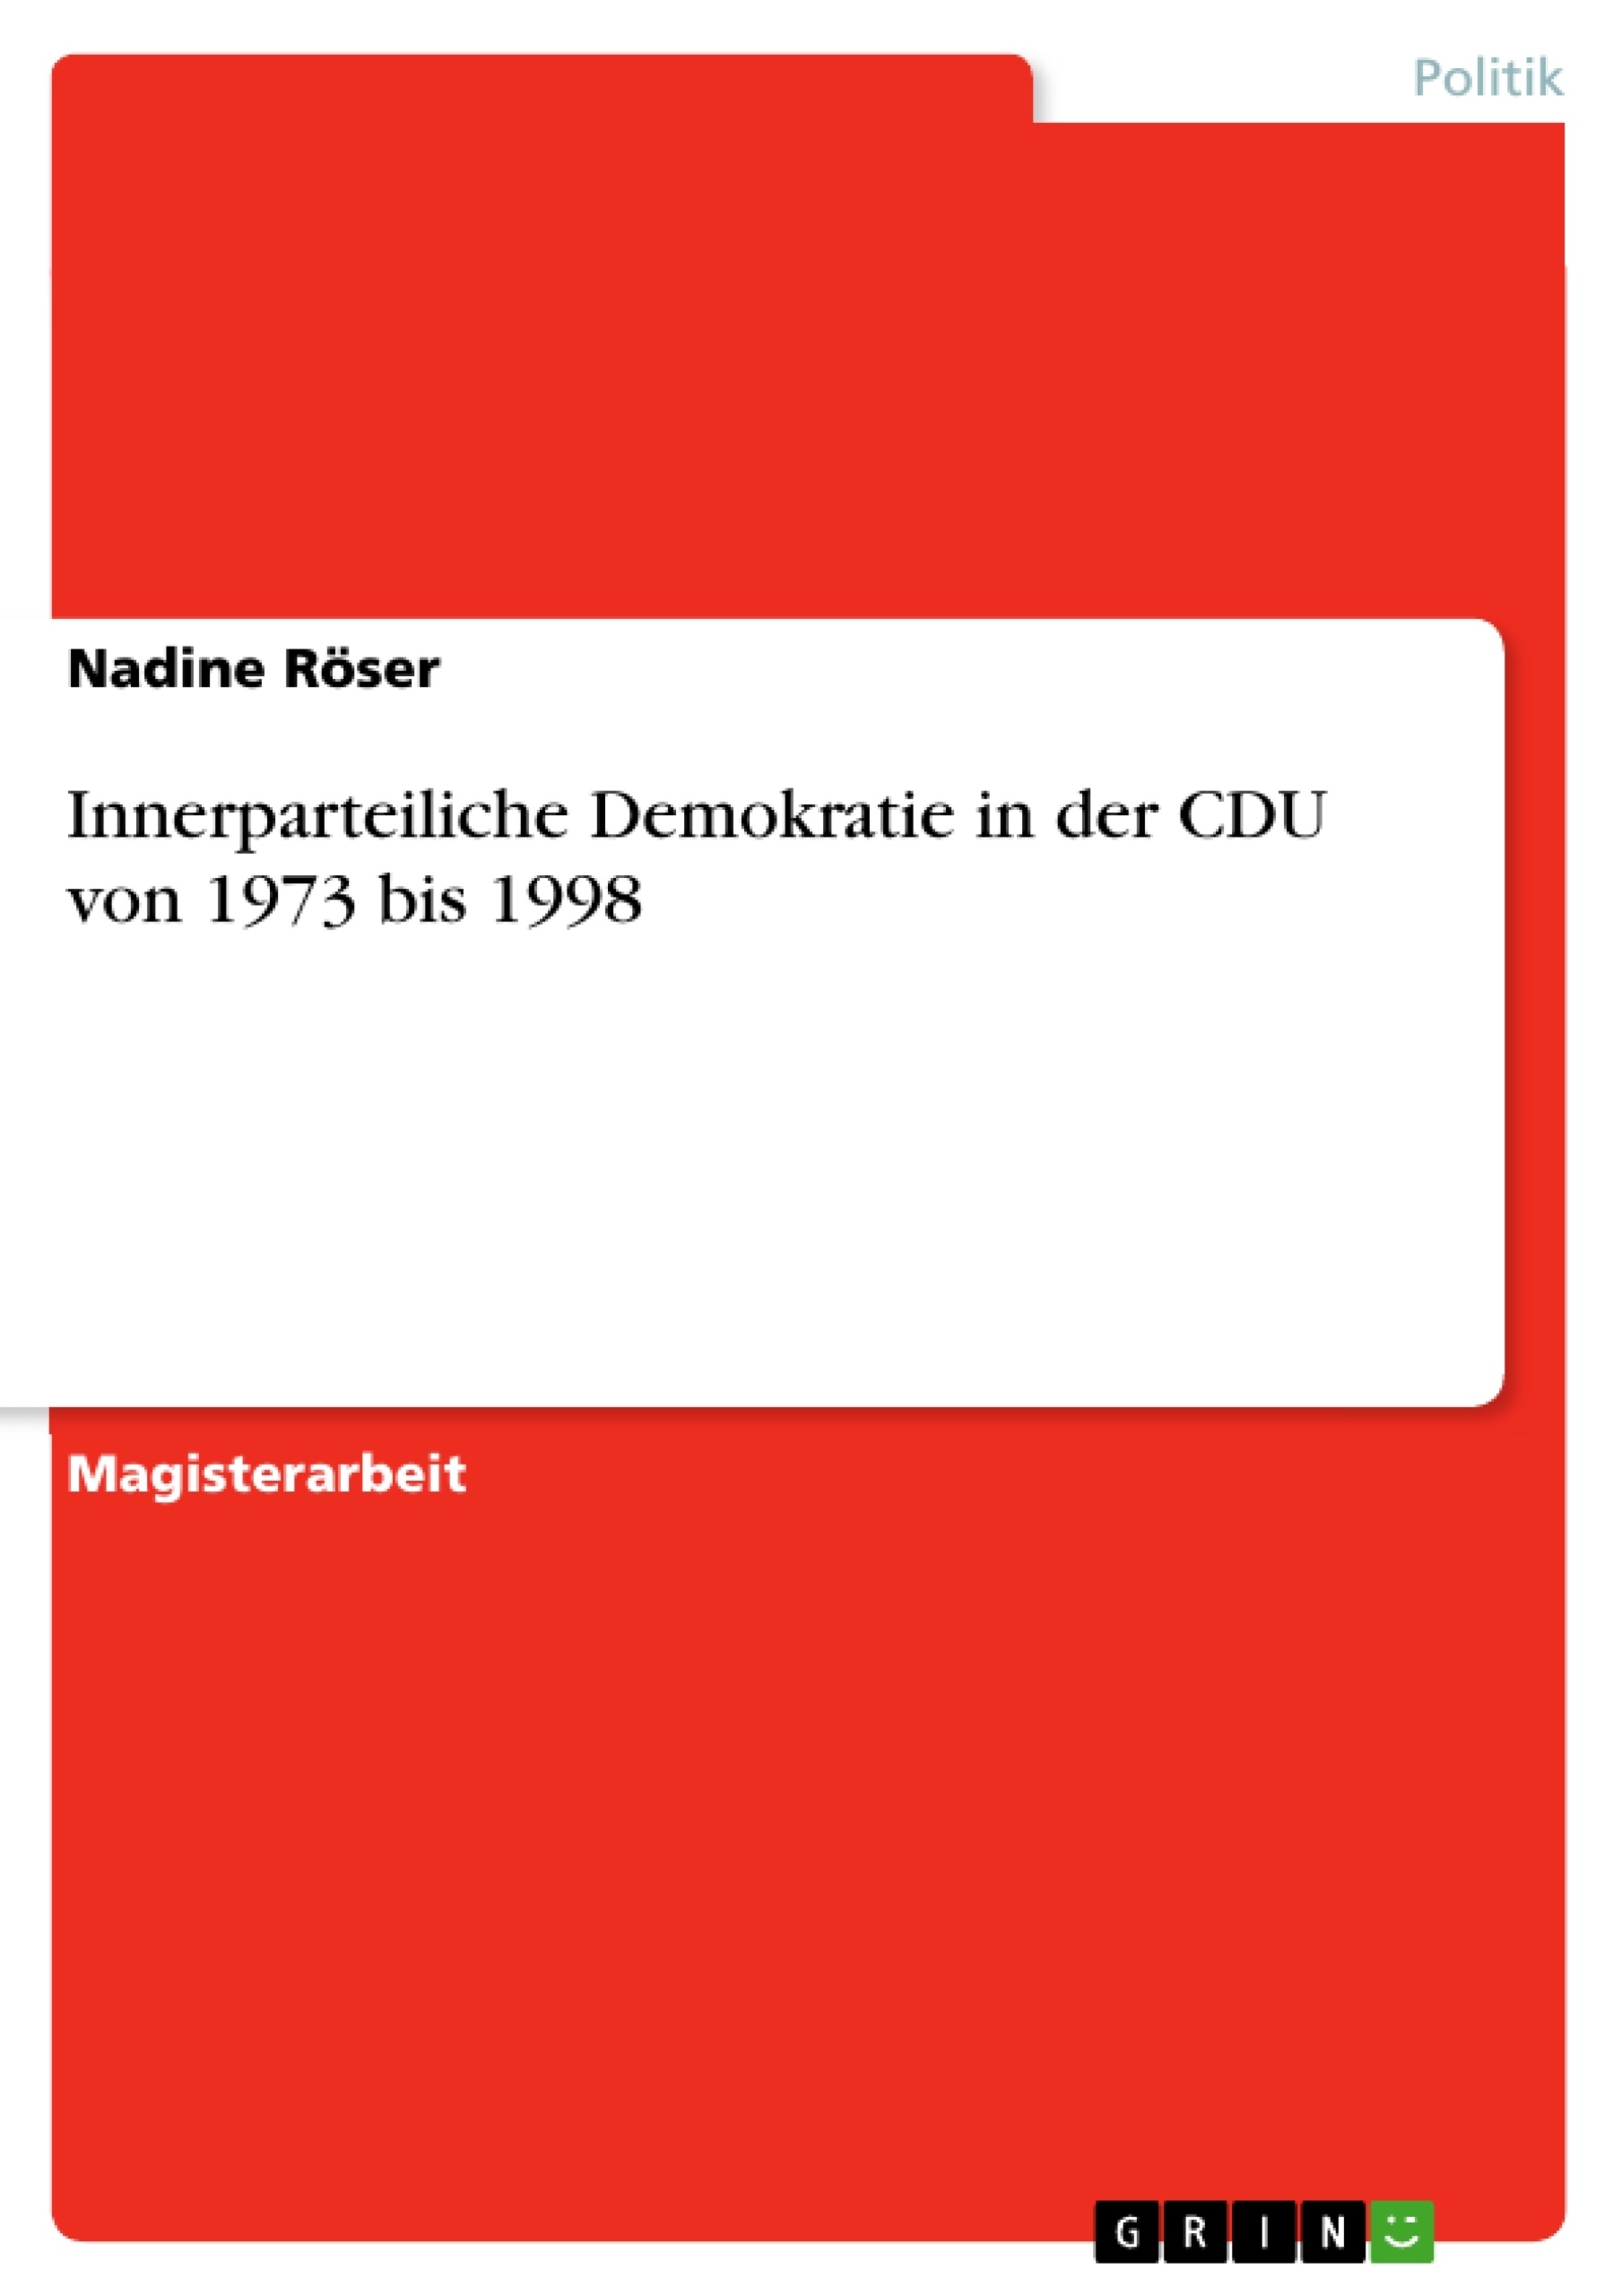 Title: Innerparteiliche Demokratie in der CDU von 1973 bis 1998